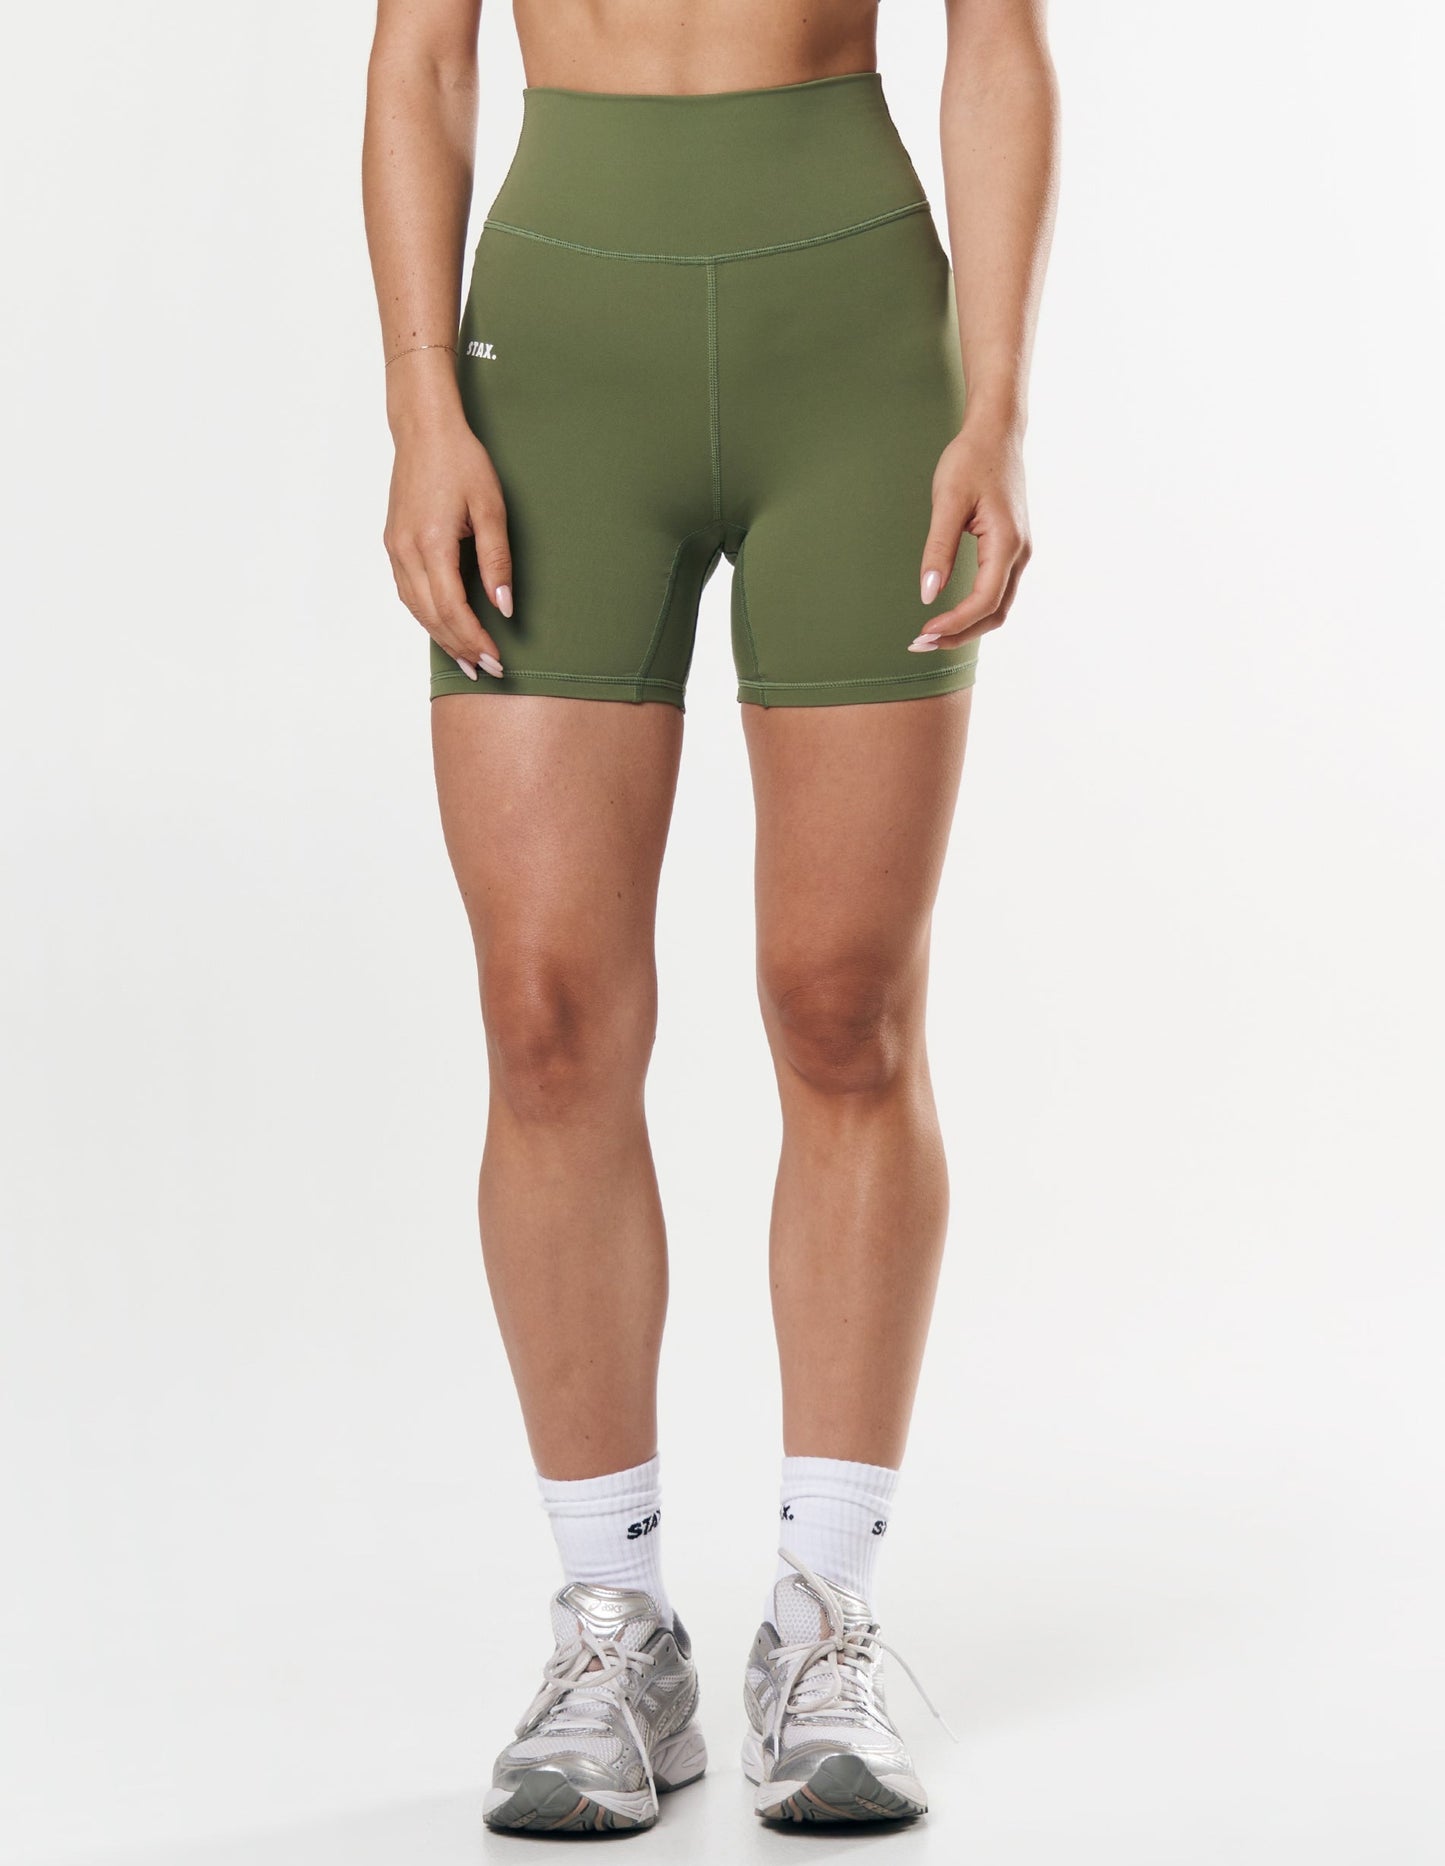 Midi Bike Shorts NANDEX ™ - Khaki